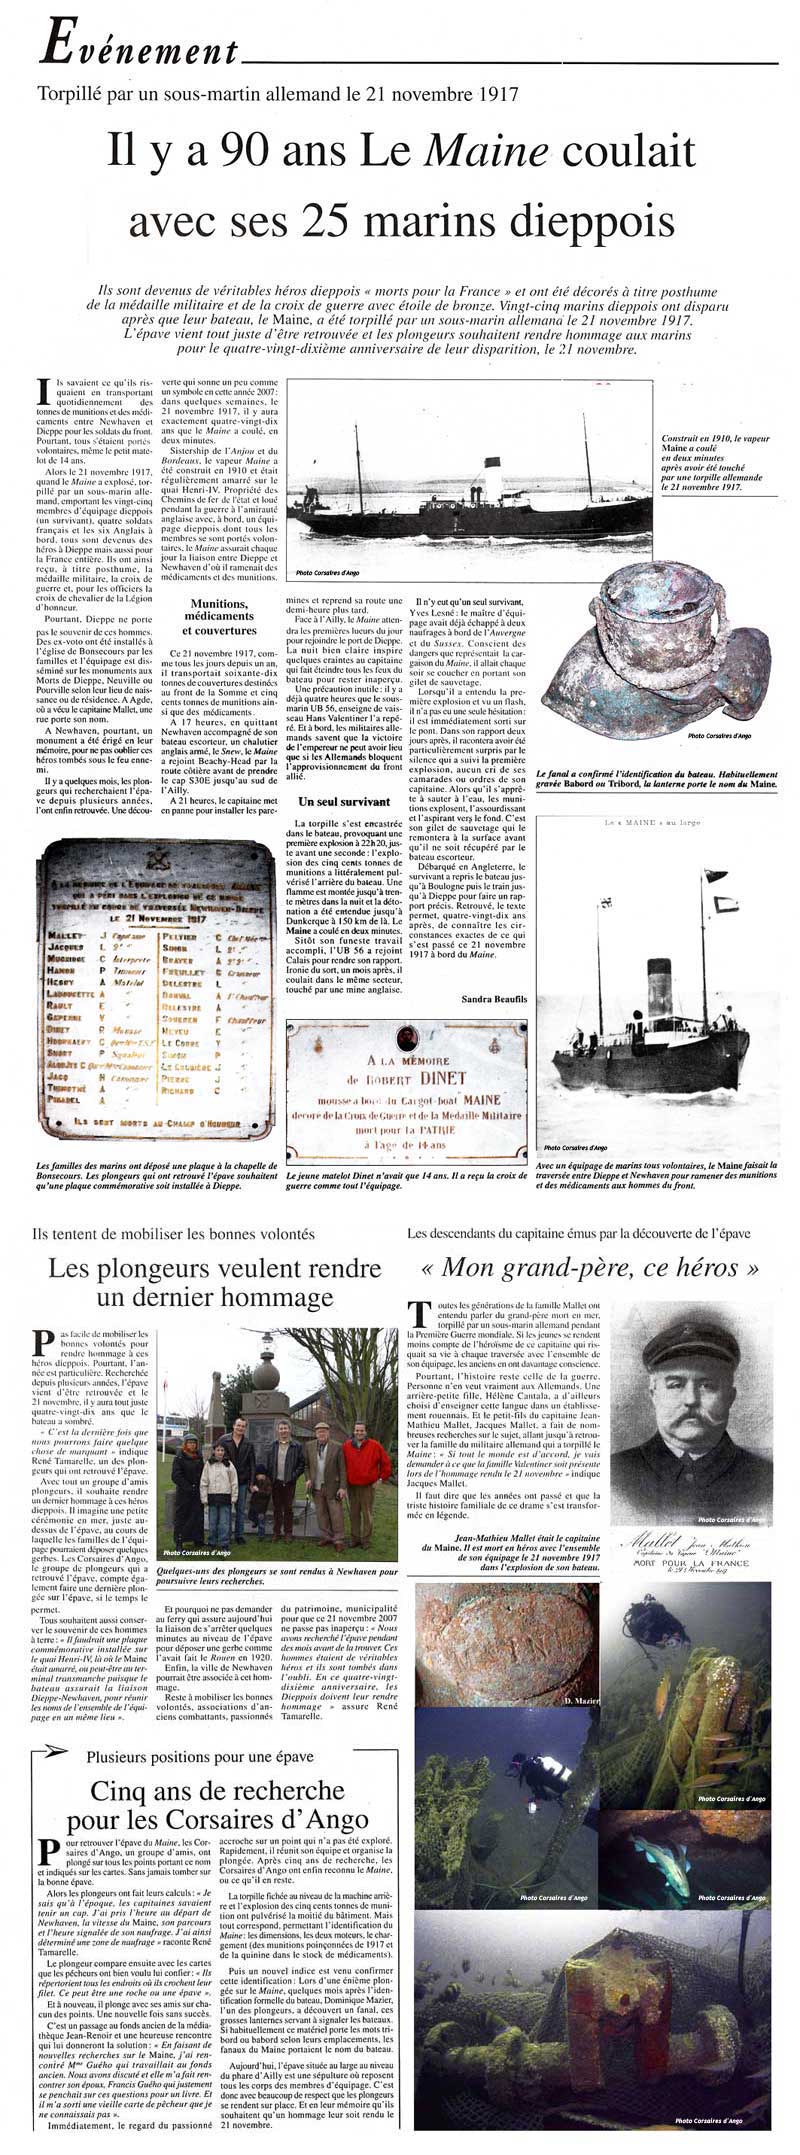 Article de presse : Il y a 90 ans le Maine coulait avec 25 marins dieppois